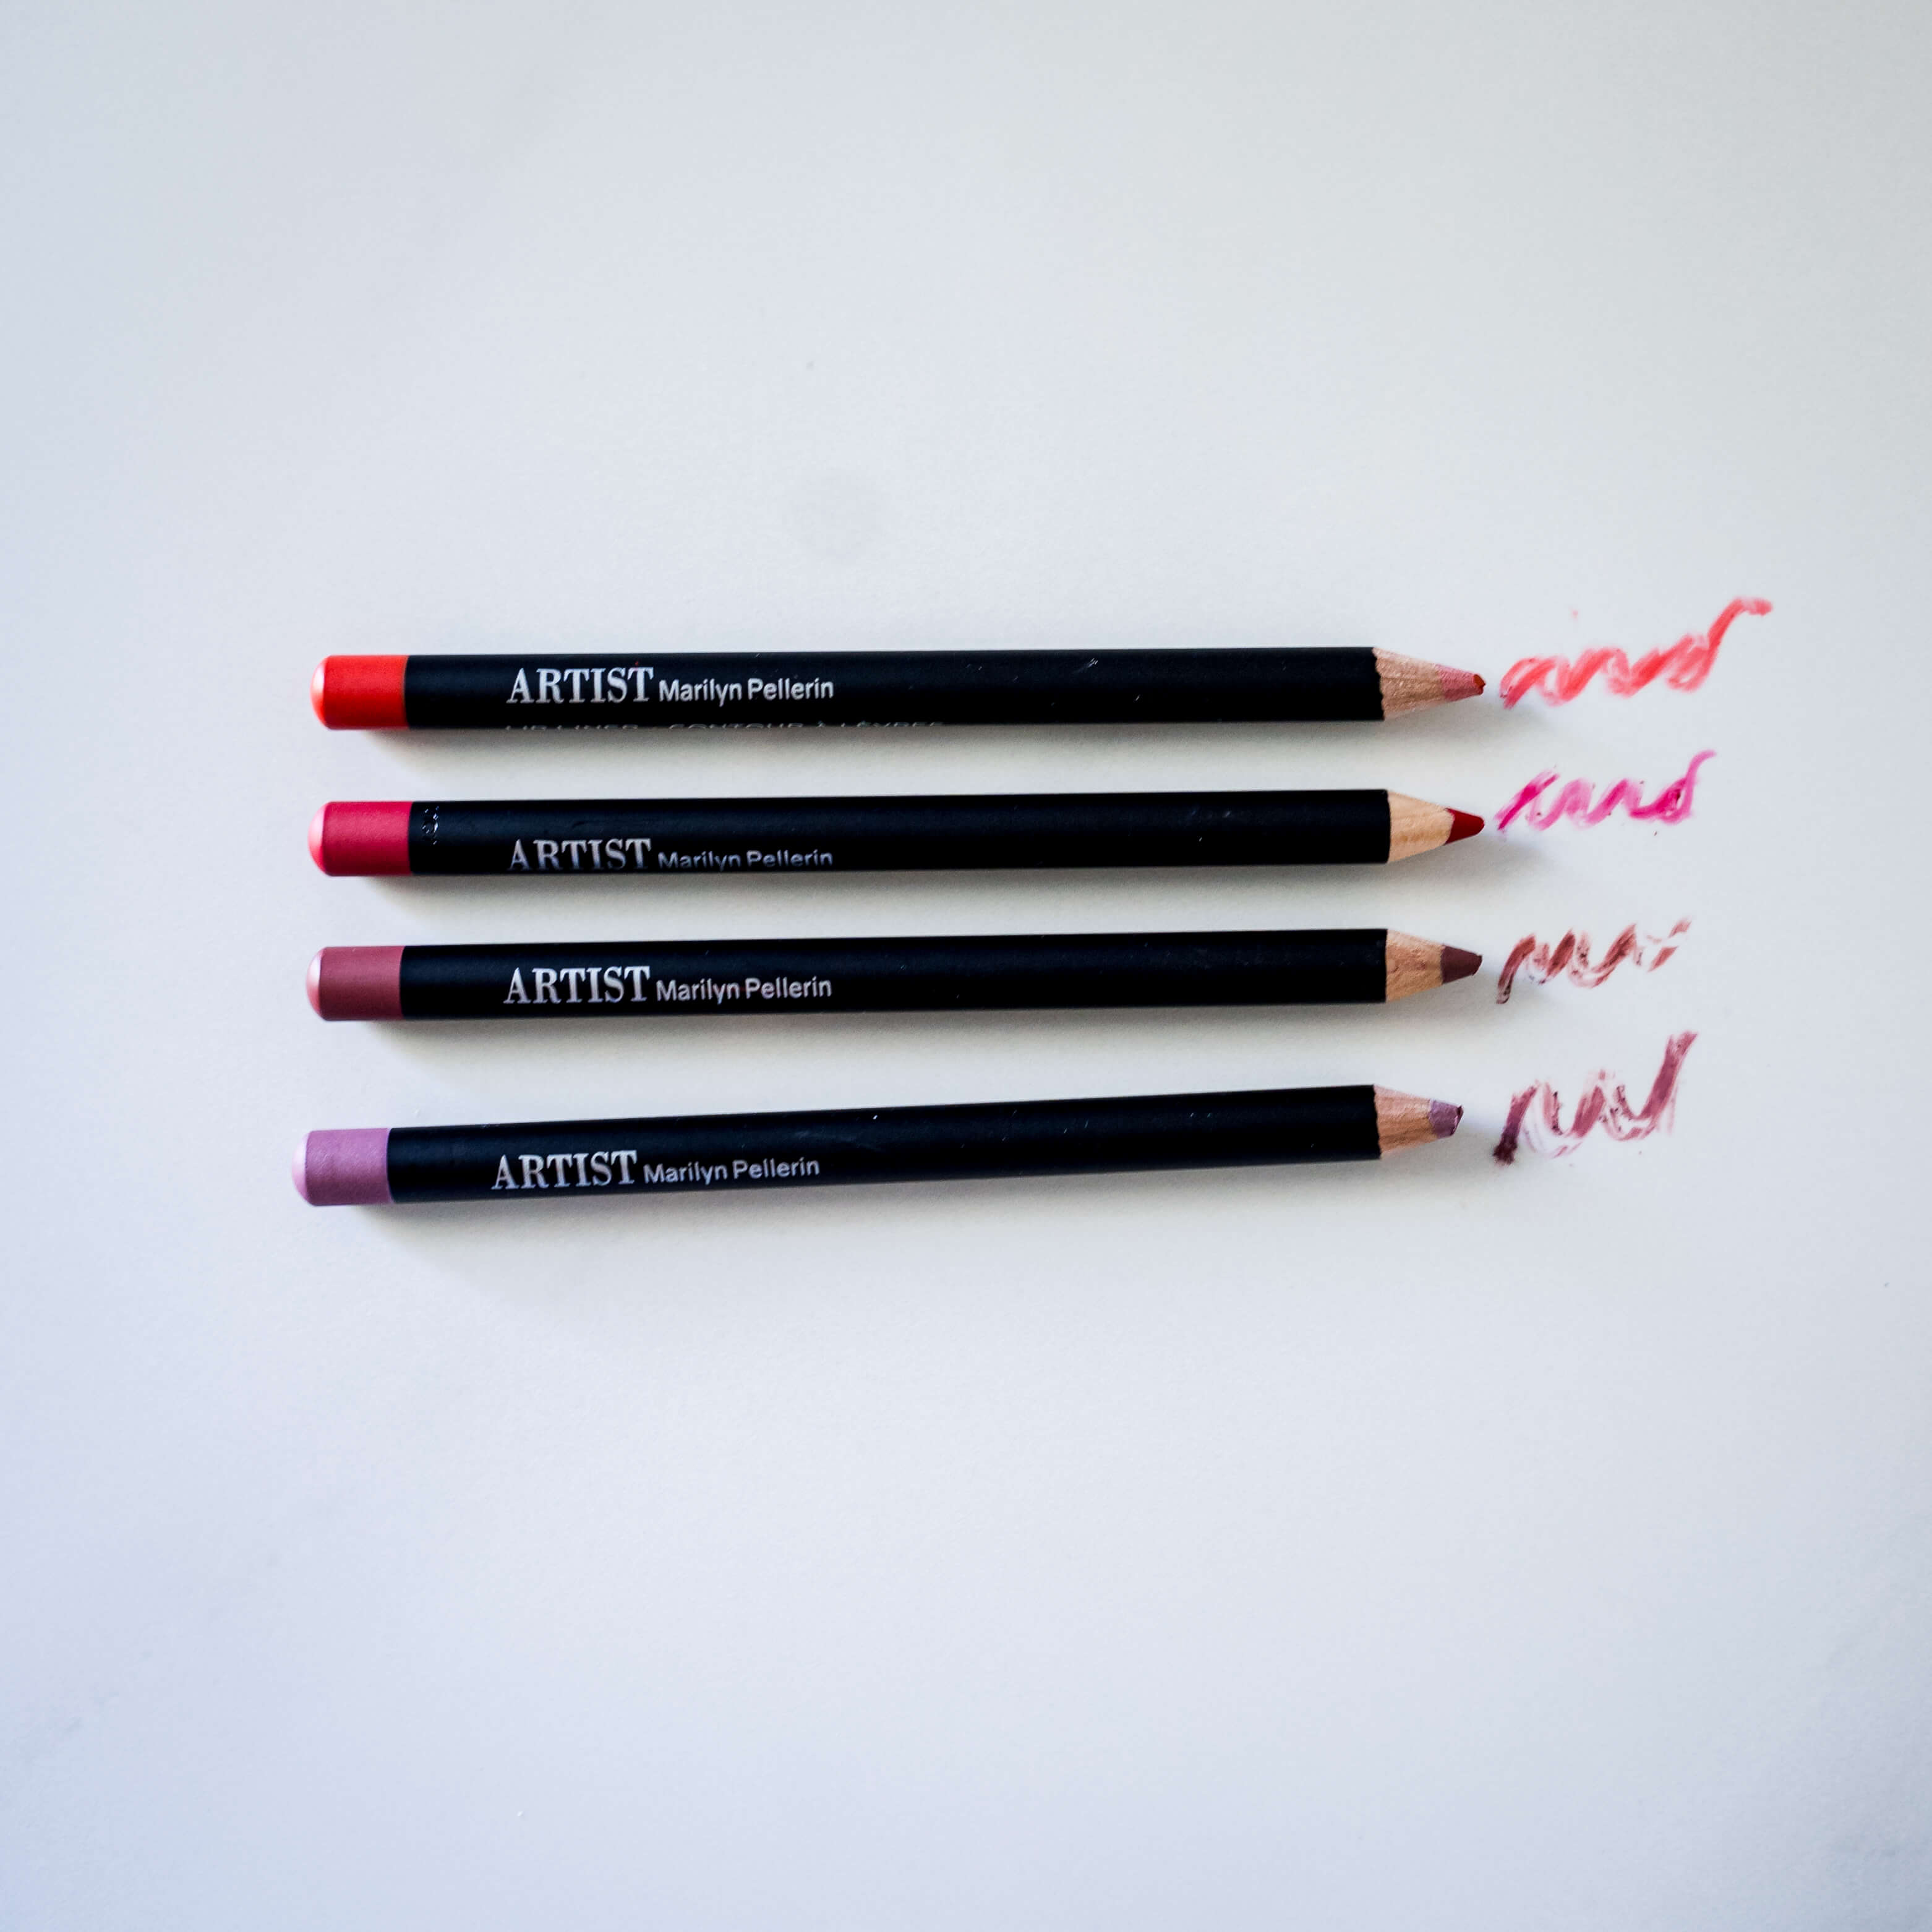 Crayon à lèvres